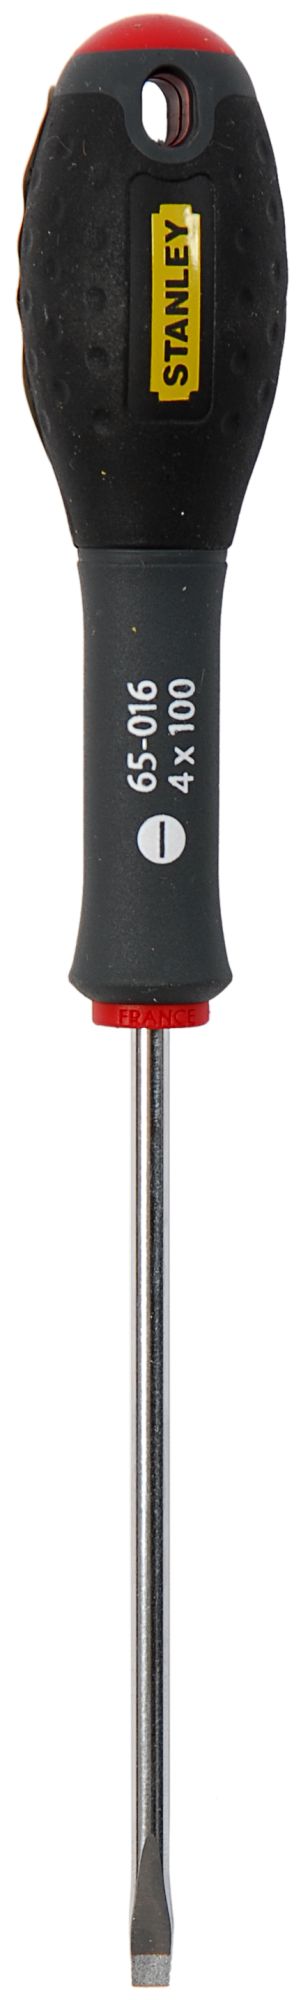 Destornillador FatMax®  4 X 100 mm SBD-0-65-016 | DESTORNILLADORES